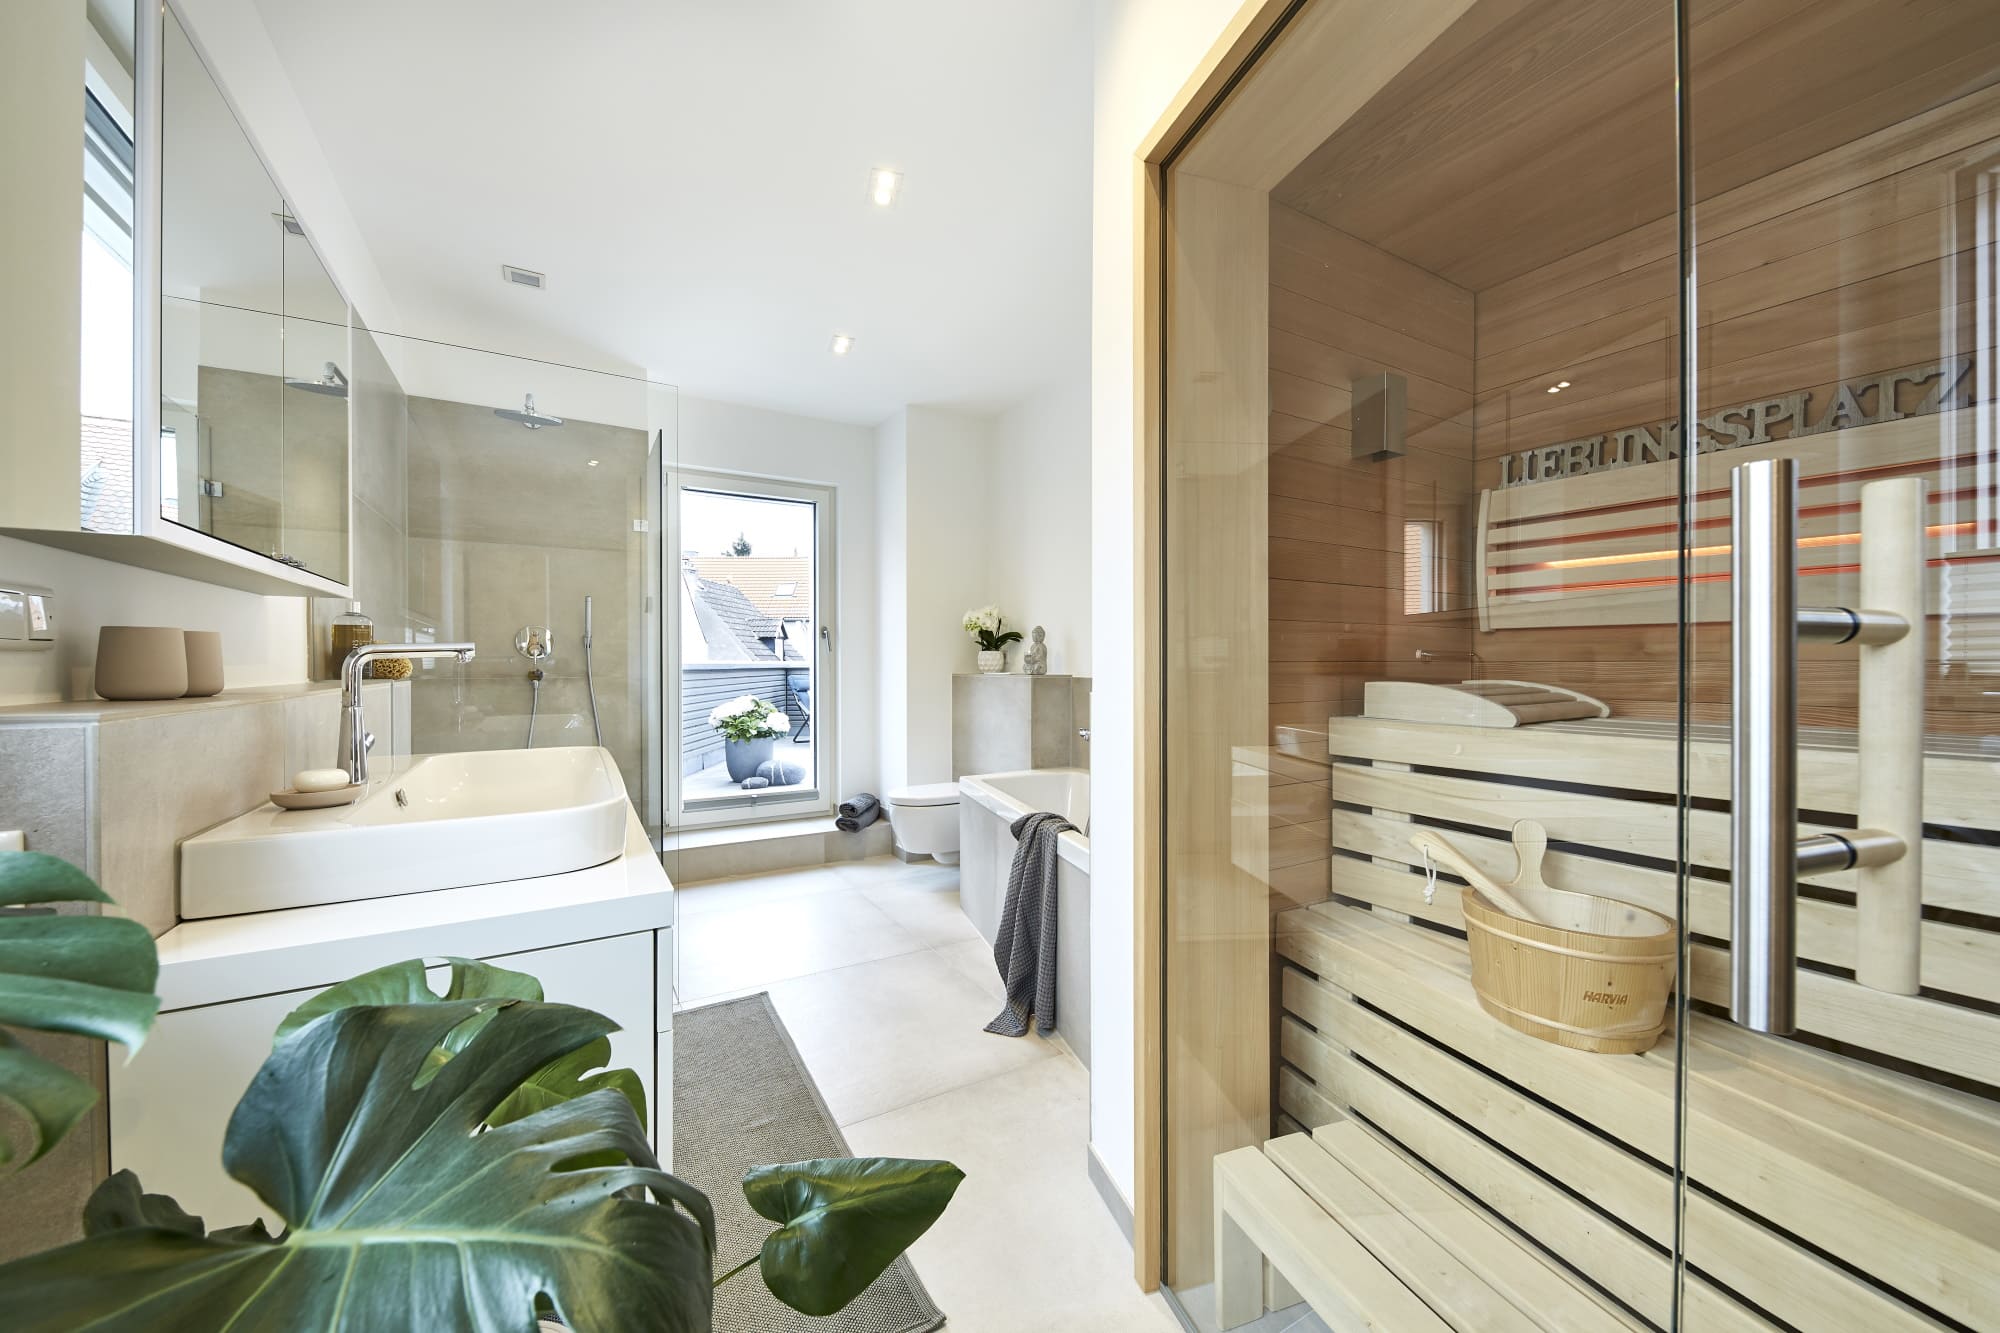 Modernes Badezimmer mit Sauna - Ideen Inneneinrichtung Haus Design Baufritz STADTHAUS EHRMANN - HausbauDirekt.de